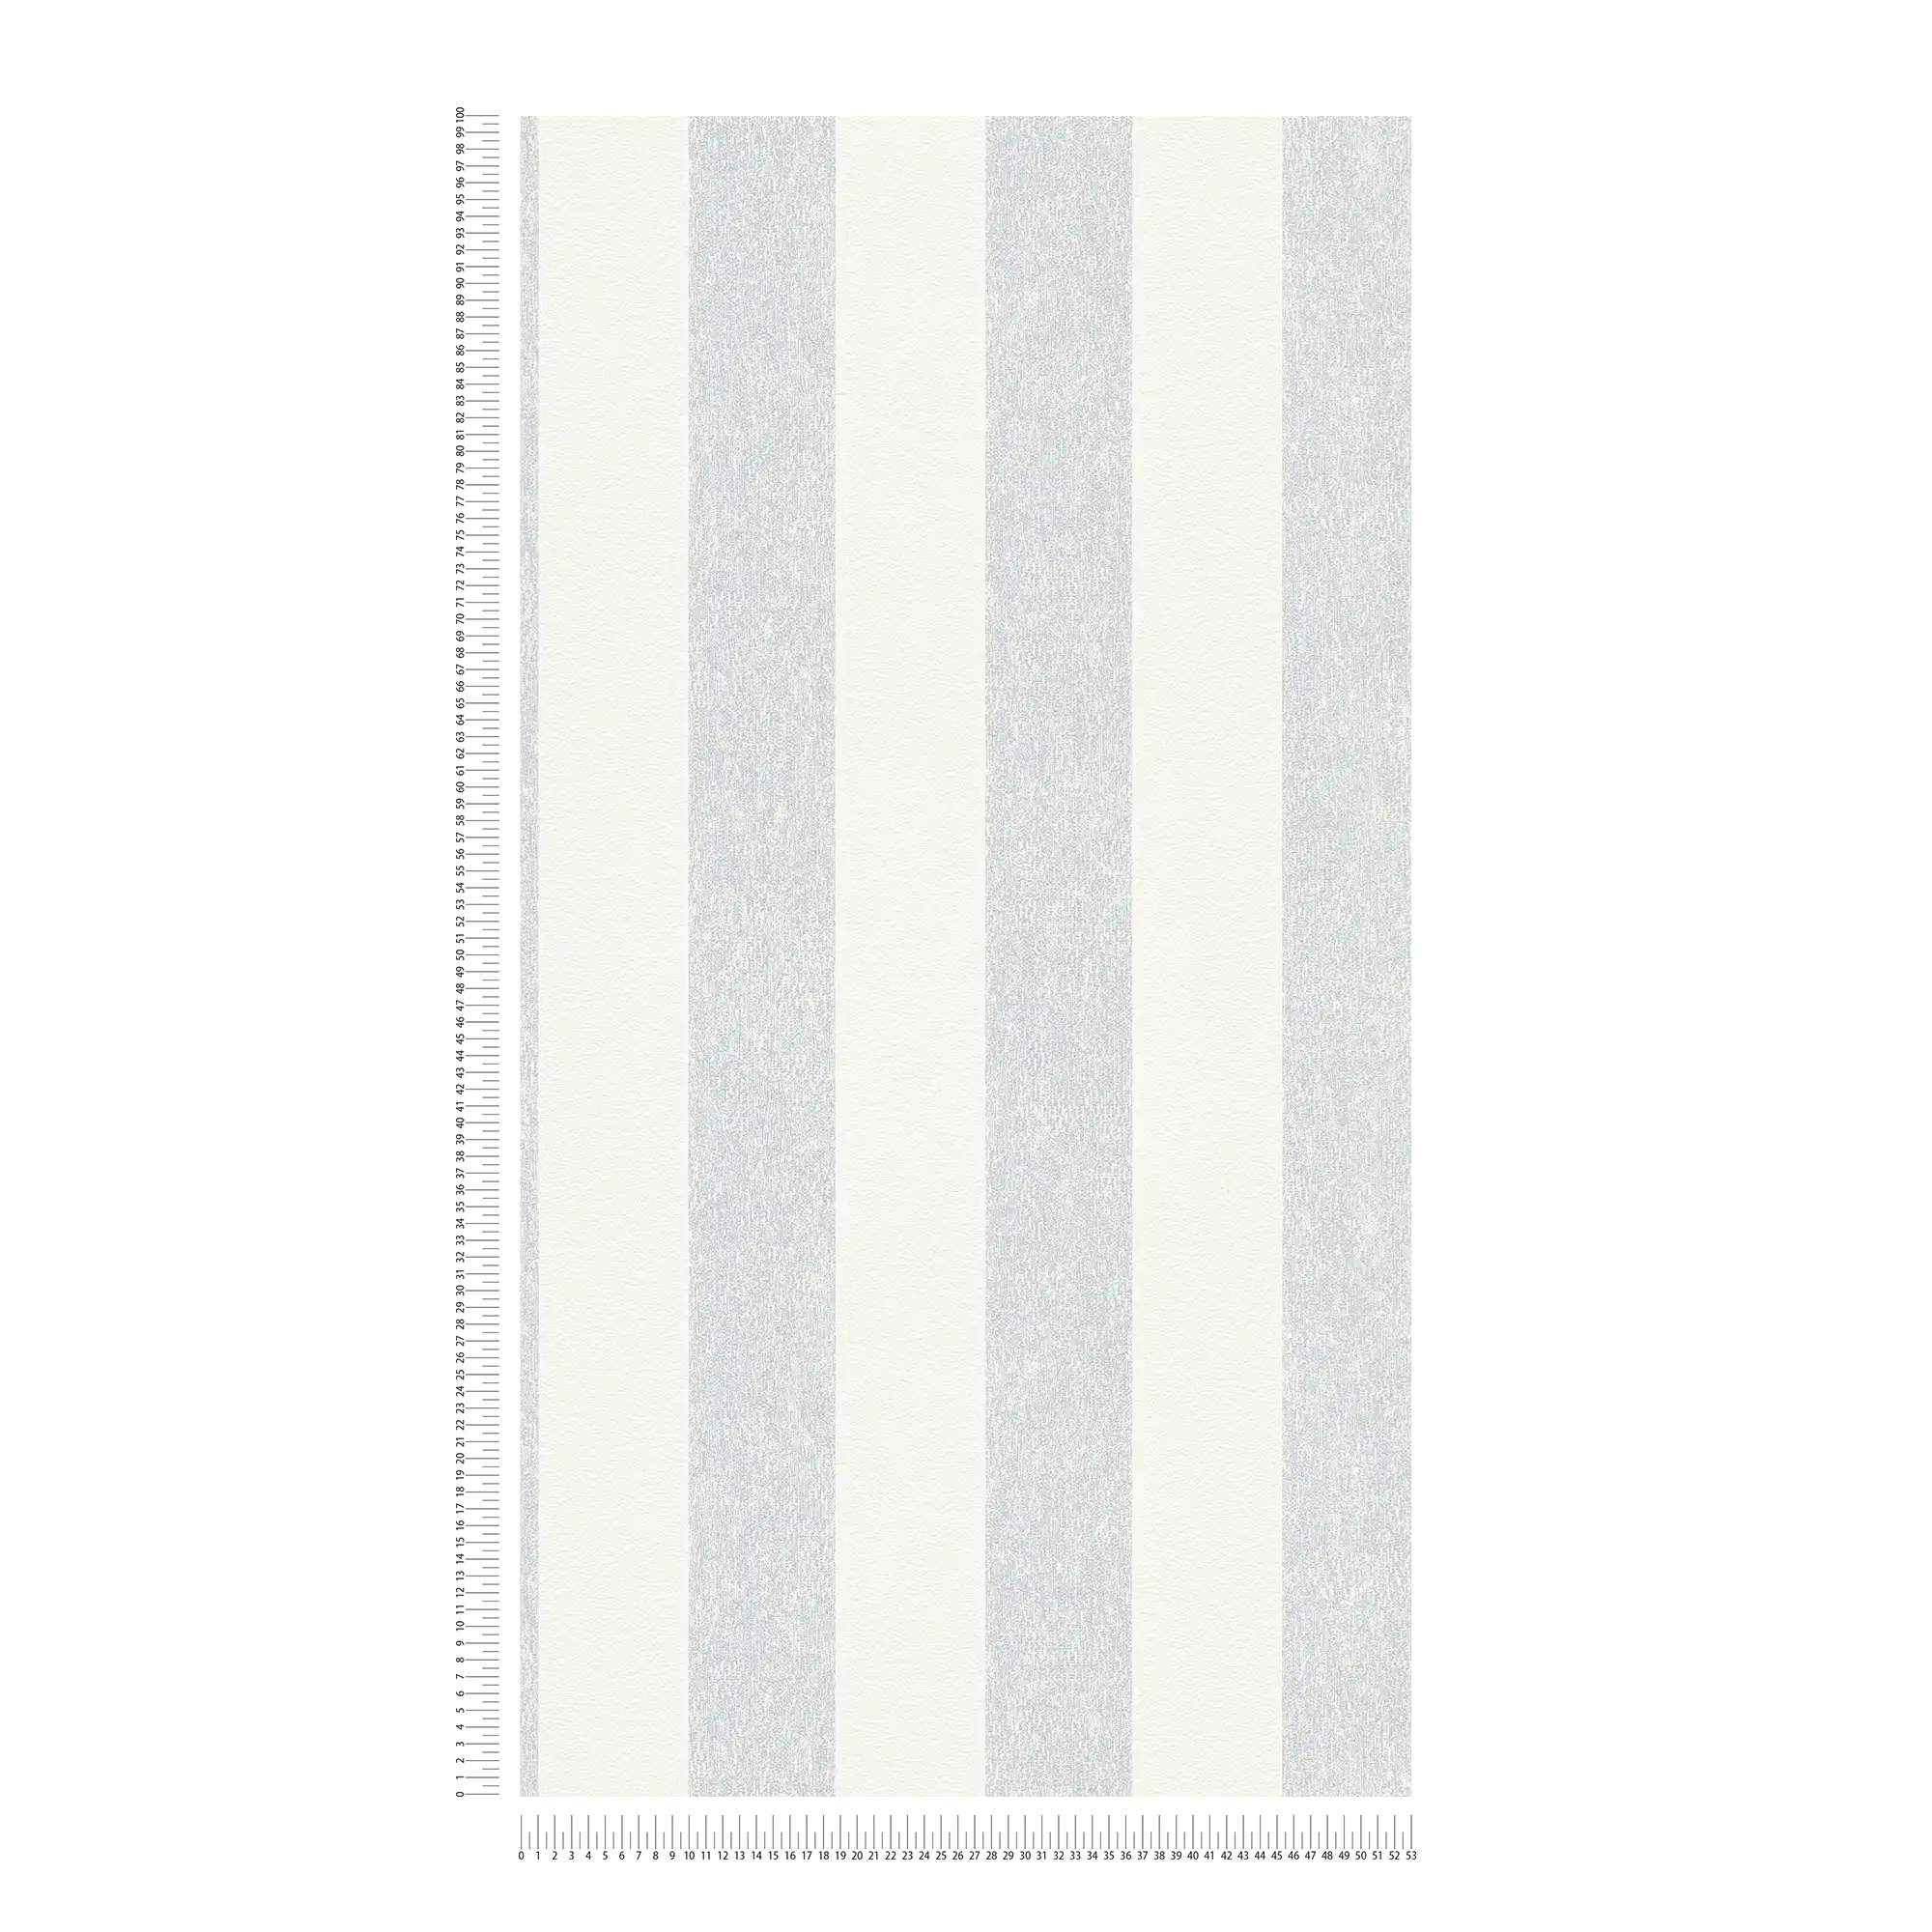             Papel pintado a rayas con estructura óptica mate - gris, blanco
        